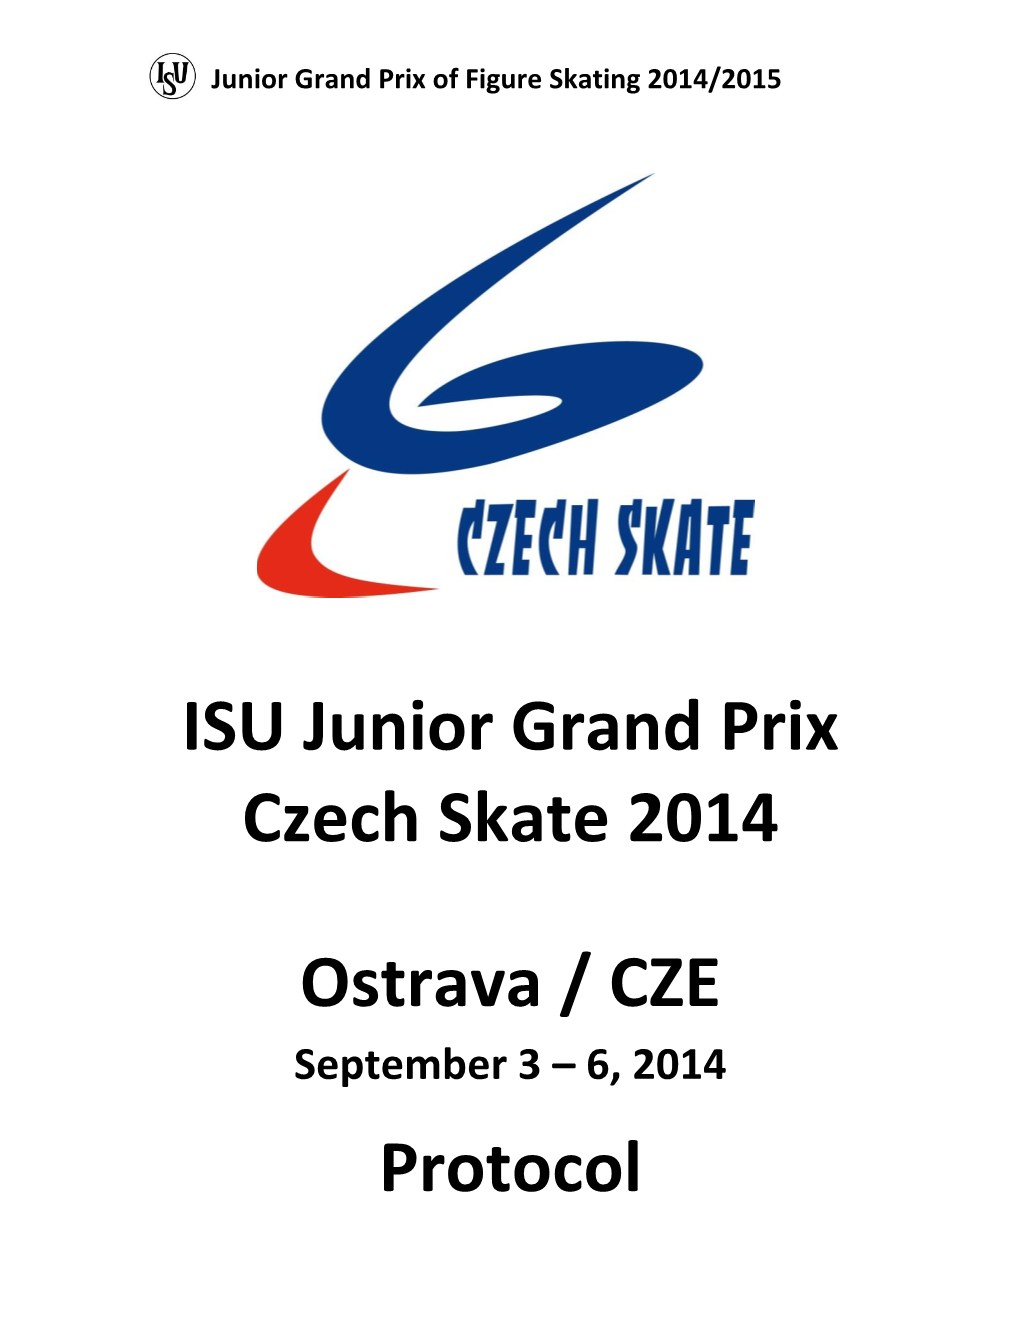 ISU Junior Grand Prix 2014 Ostrava, Czech Republic